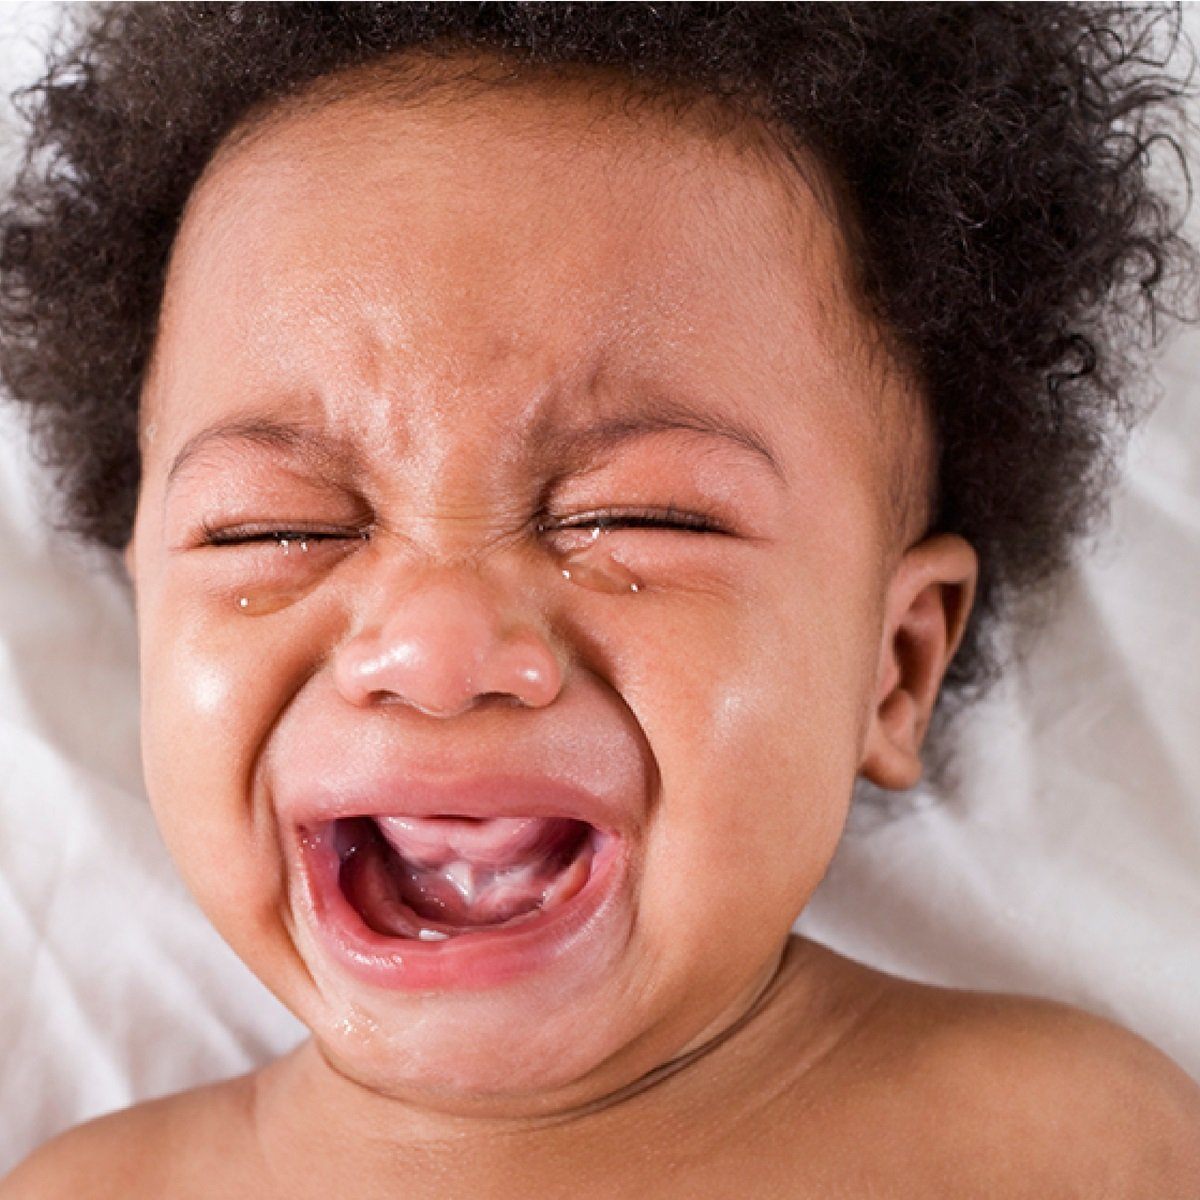 Pourquoi mon bébé pleure-t-il sans raison ?